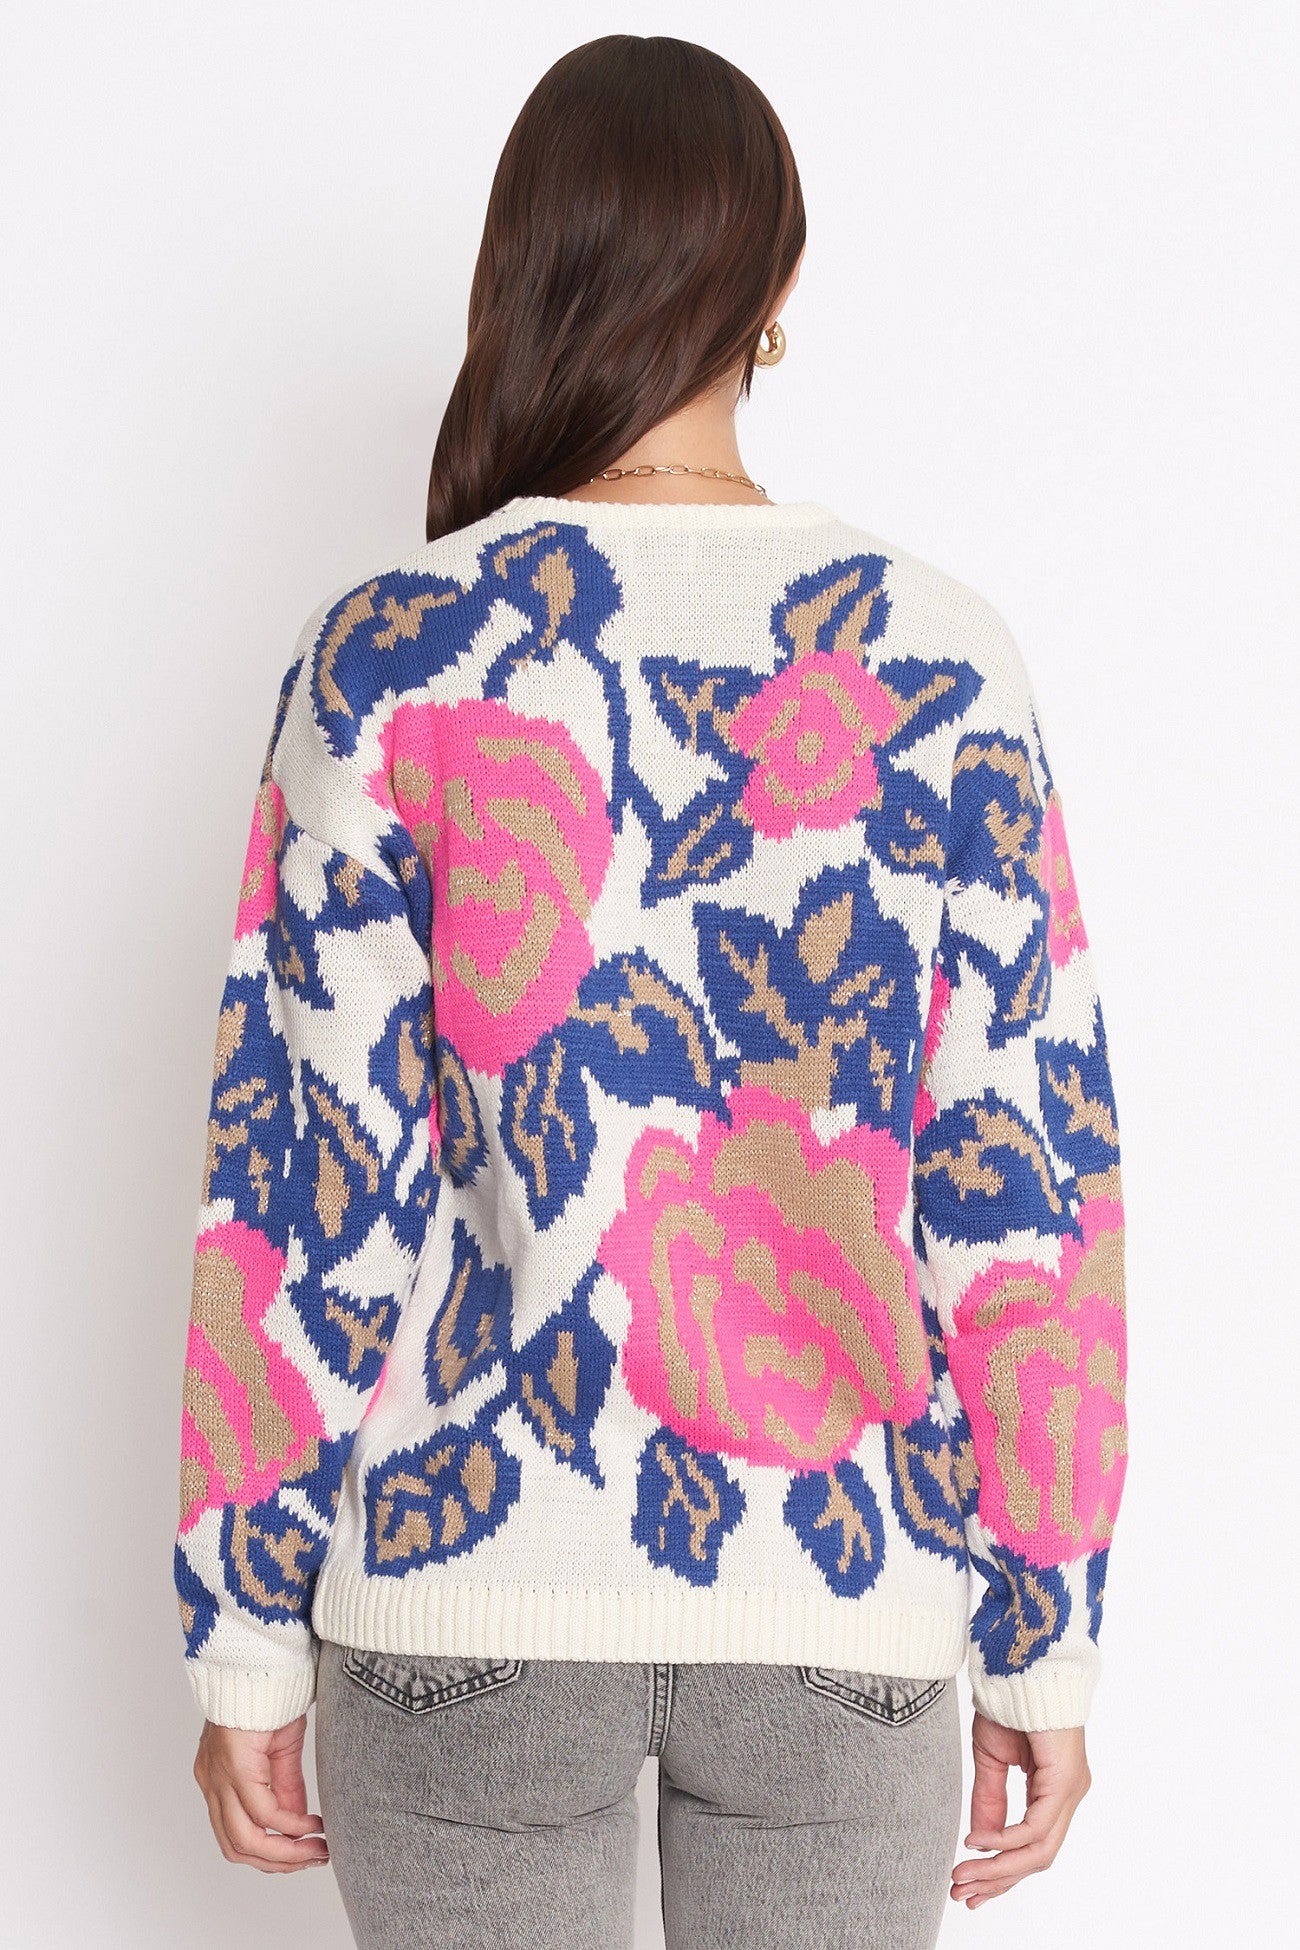 Calla Floral sweater